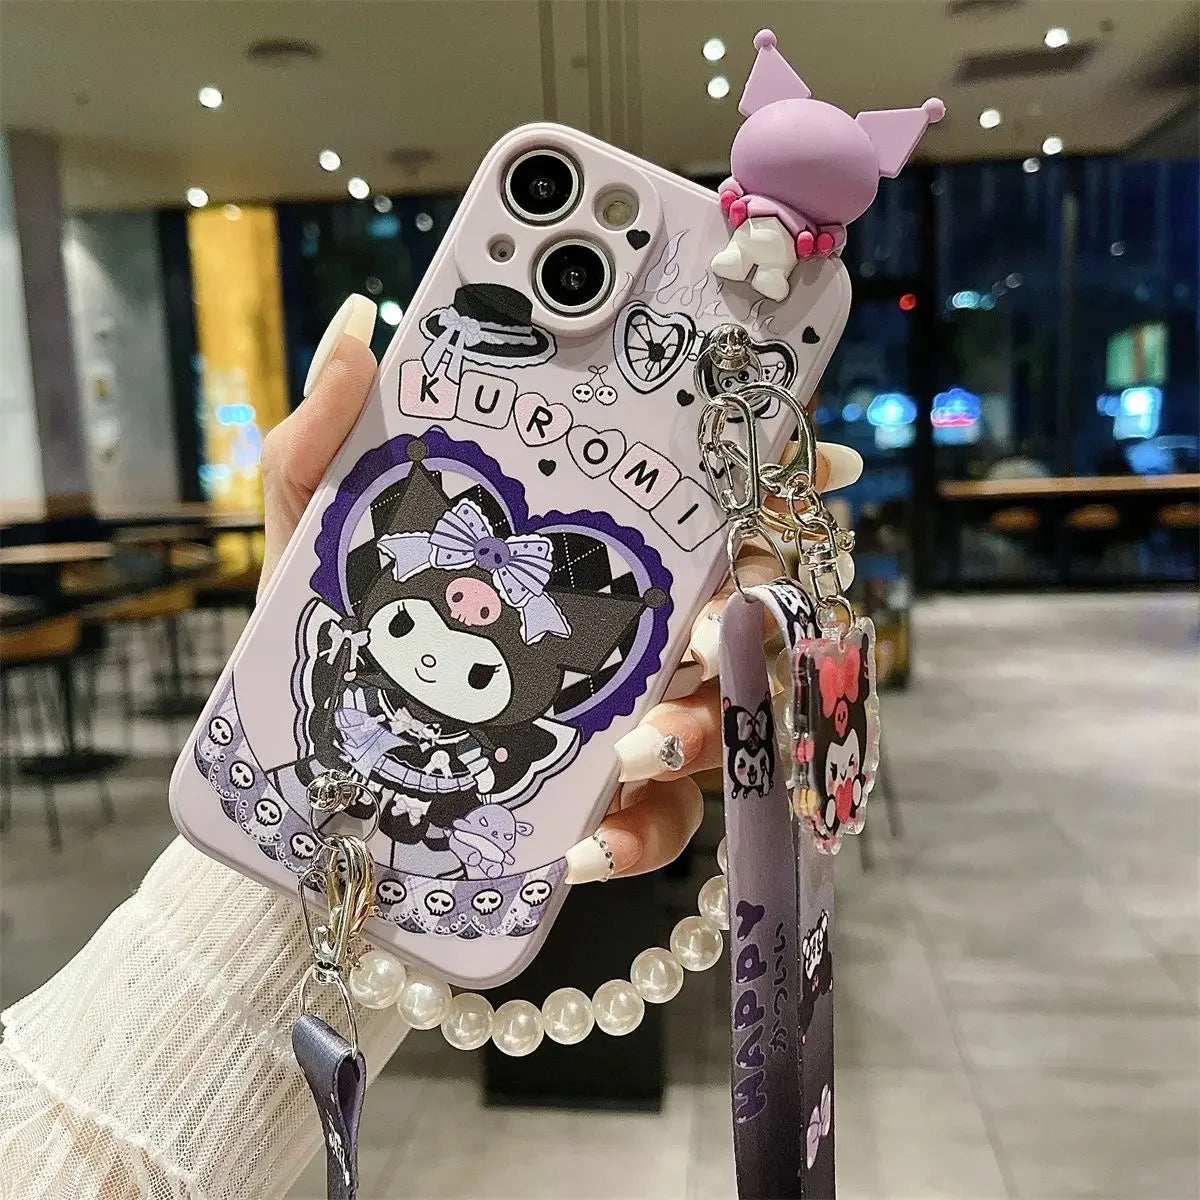 Sanrio Kuromi Cute Phone Cases For iPhones